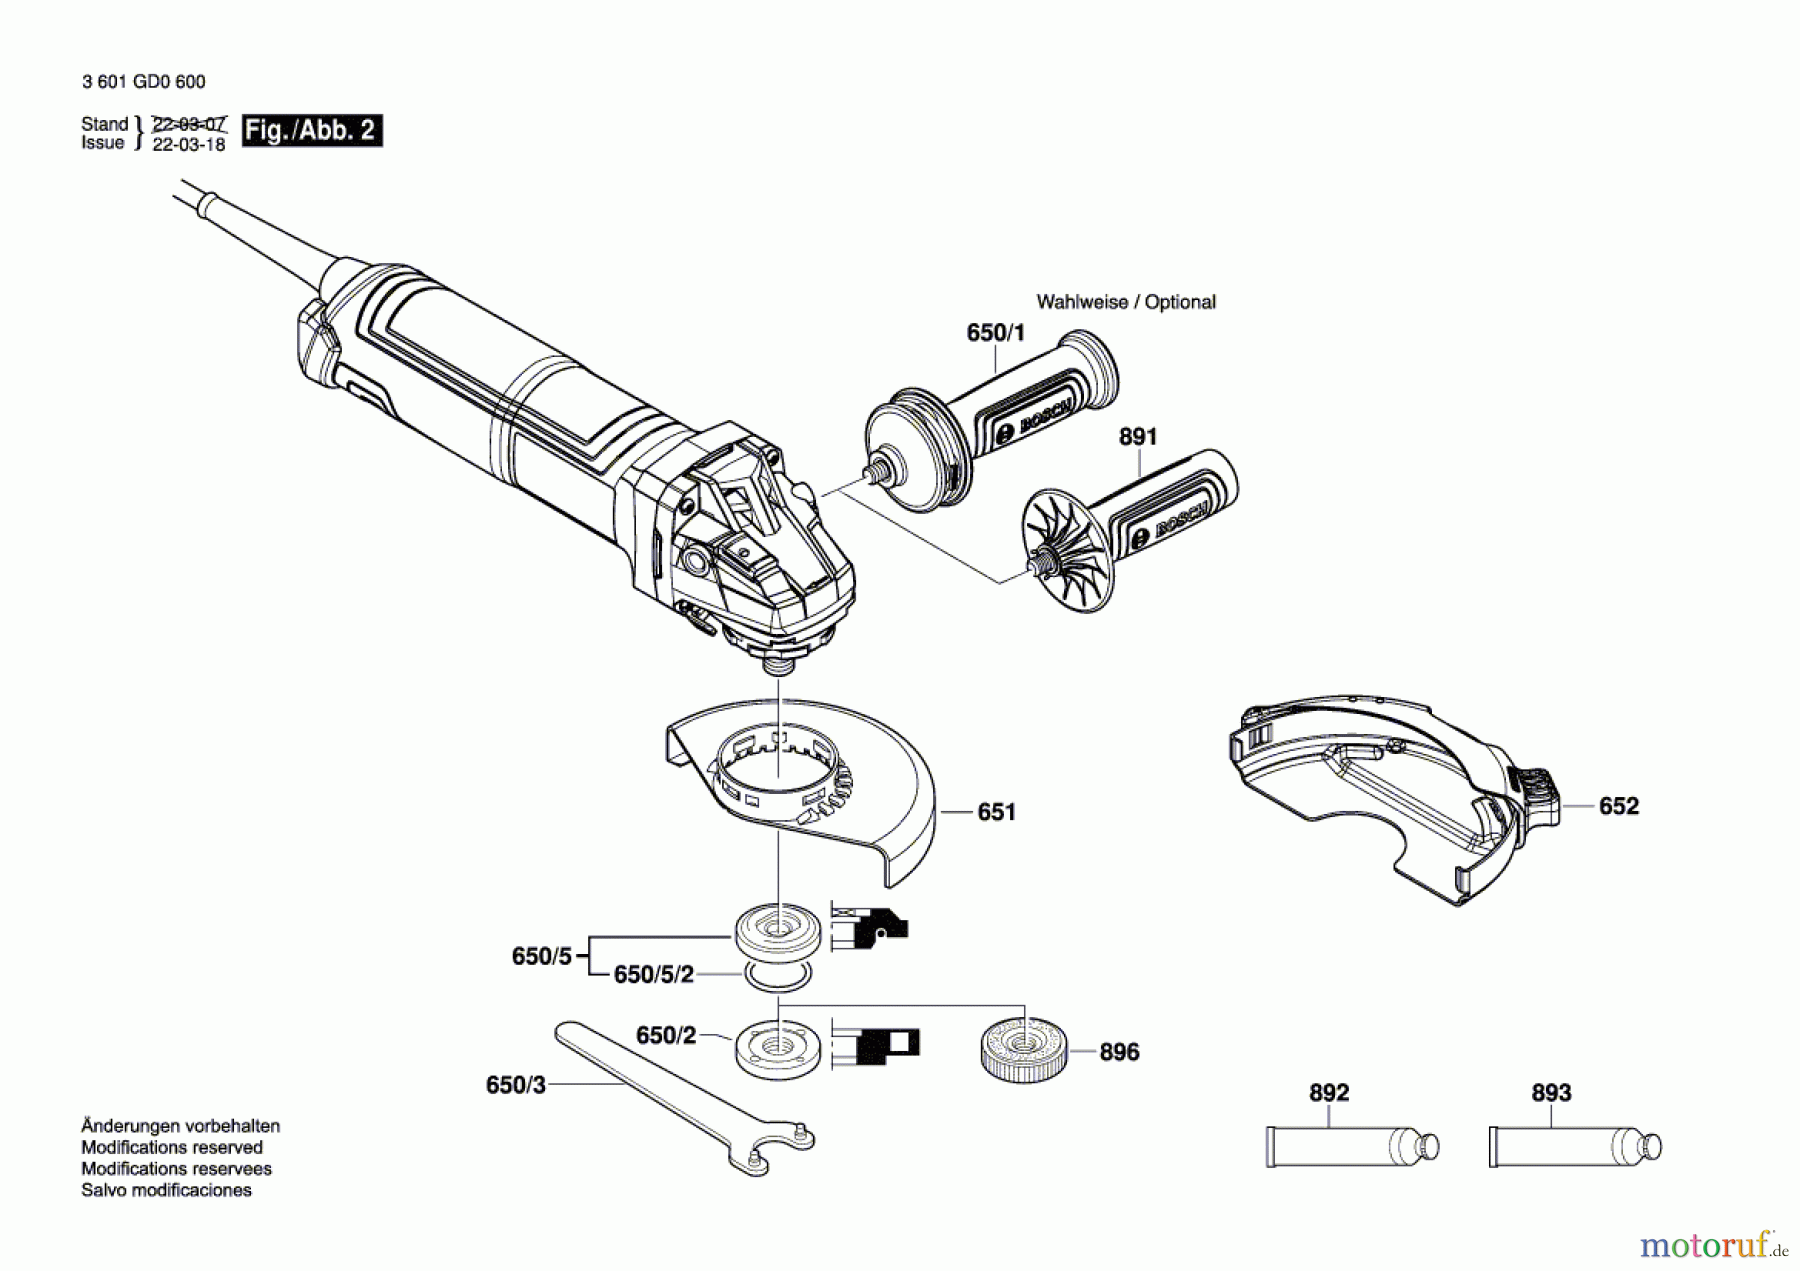  Bosch Werkzeug Winkelschleifer GWS 17-150 S Seite 2